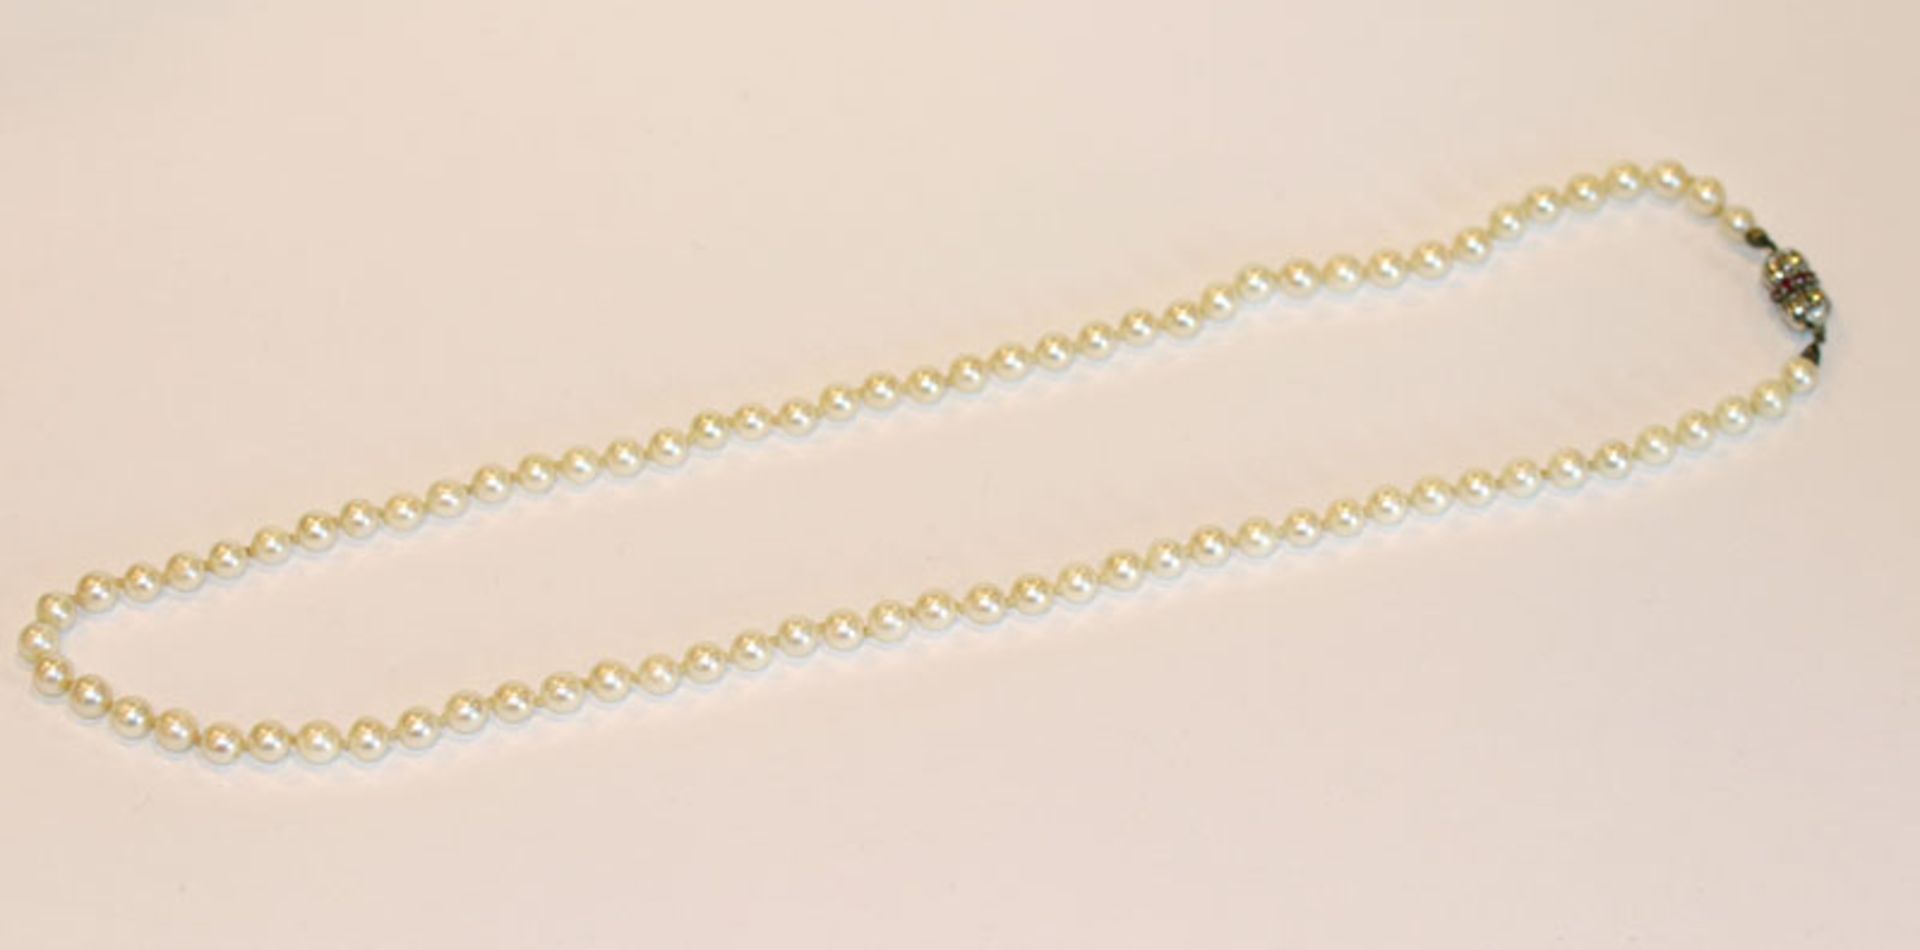 Perlenkette mit 14 k Weißgold Schließe mit Rubinen besetzt, L 64 cm, Tragespuren